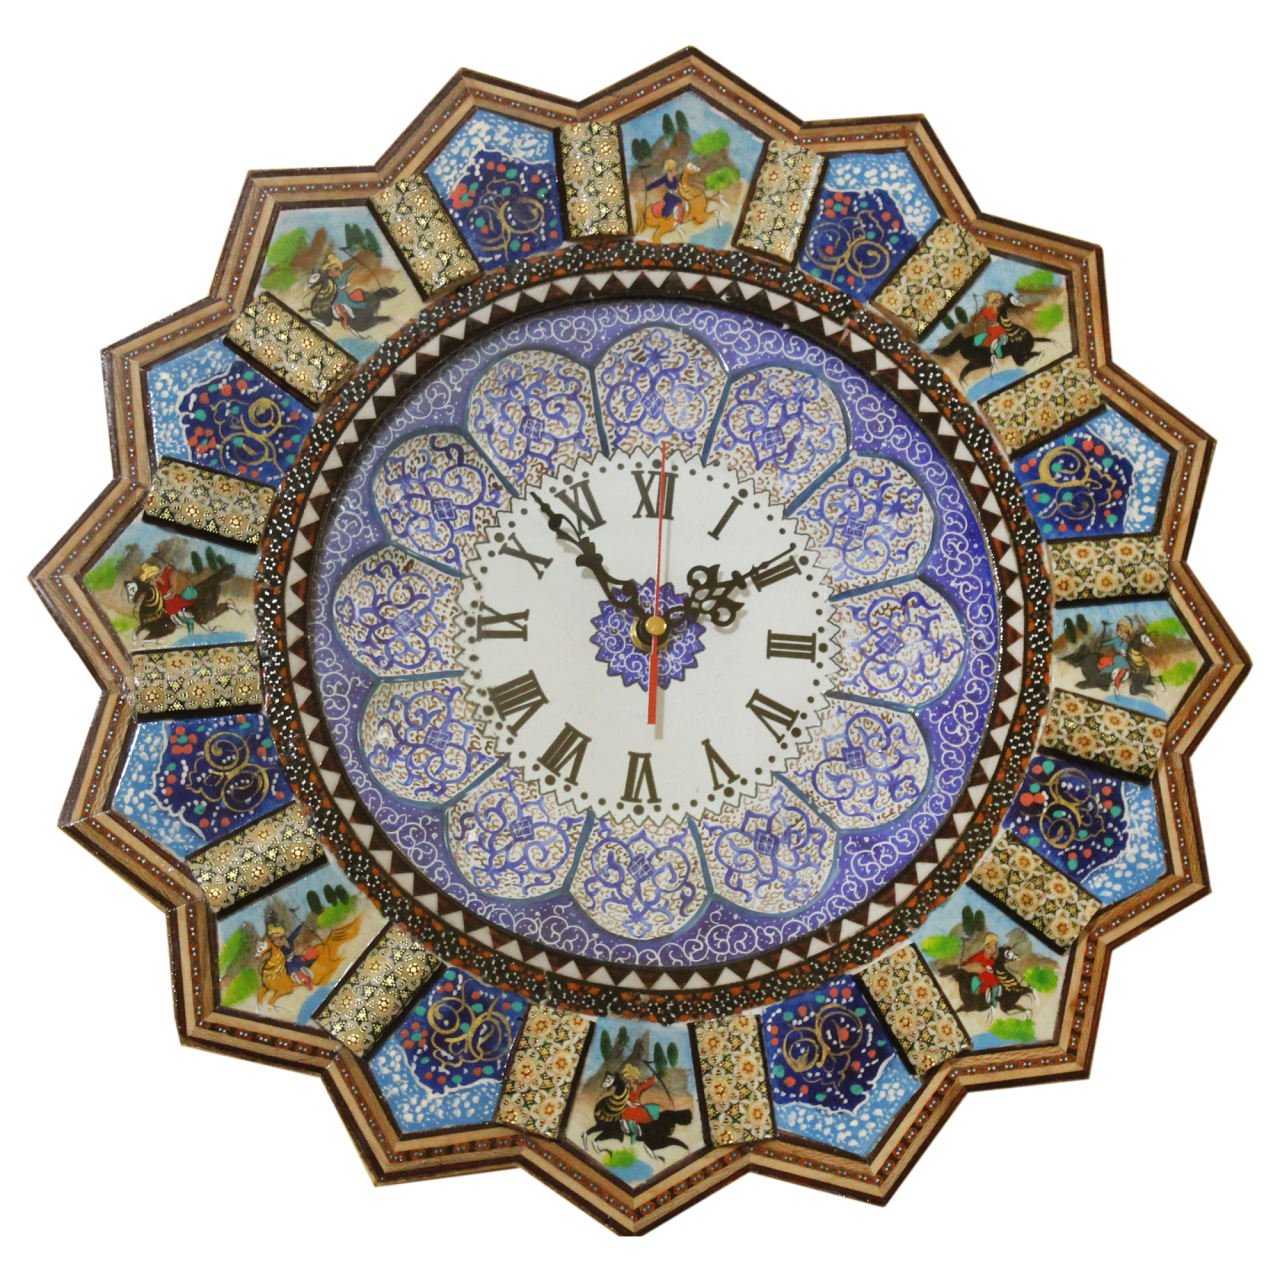 Khatam clock shekargah design code 041007700006 , Khatam clock, Inlaid, Khatam clock model, Khatam